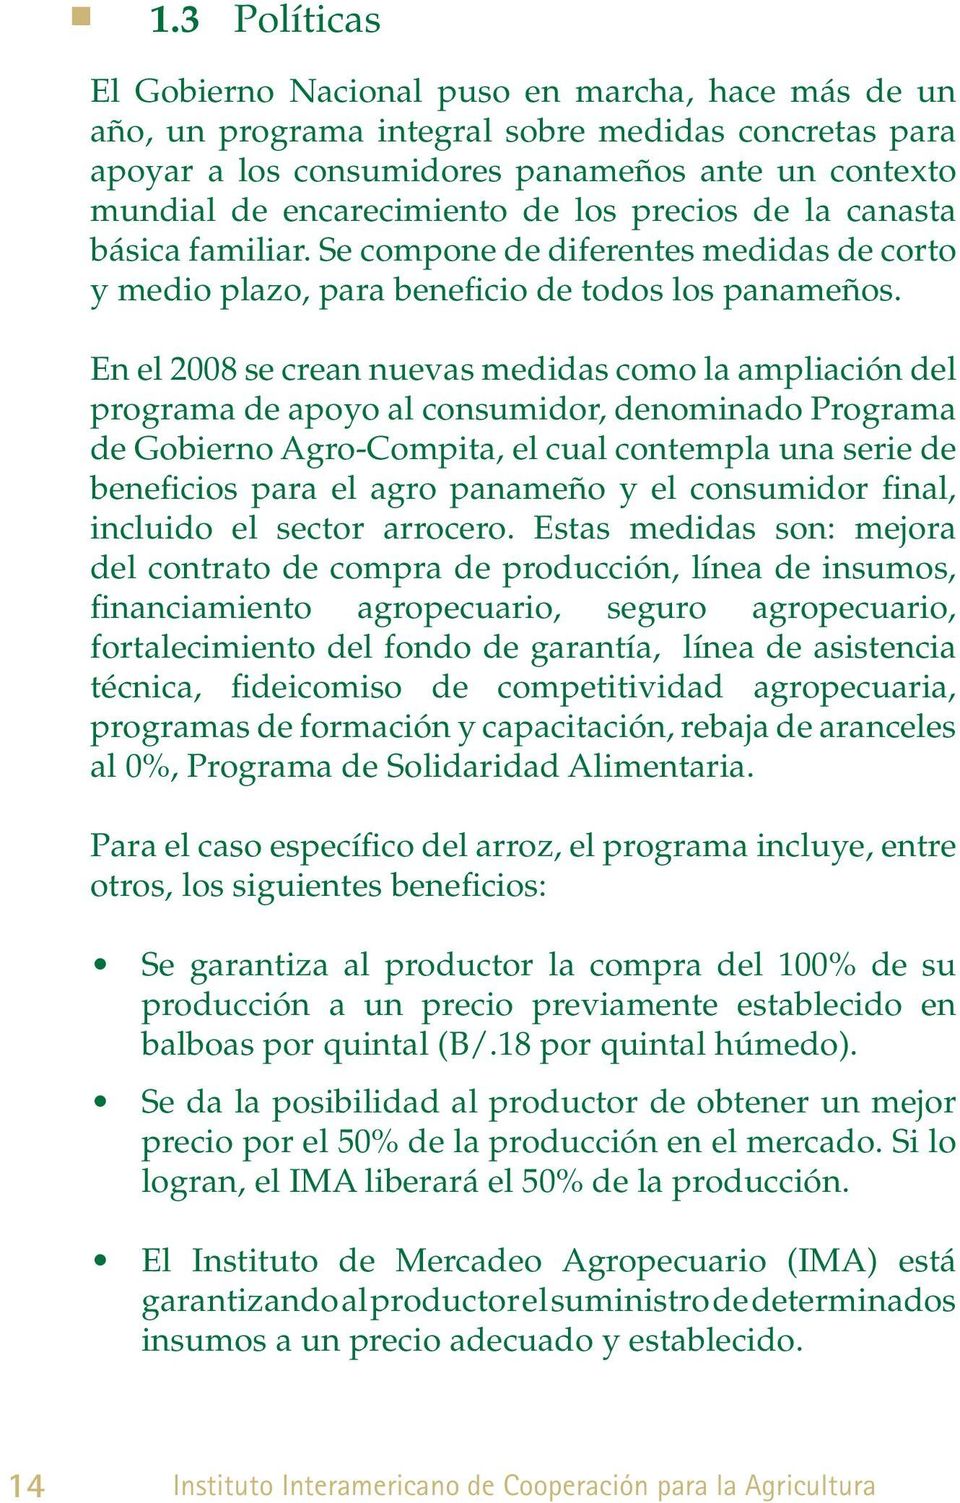 En el 2008 se crean nuevas medidas como la ampliación del programa de apoyo al consumidor, denominado Programa de Gobierno gro-compita, el cual contempla una serie de beneficios para el agro panameño